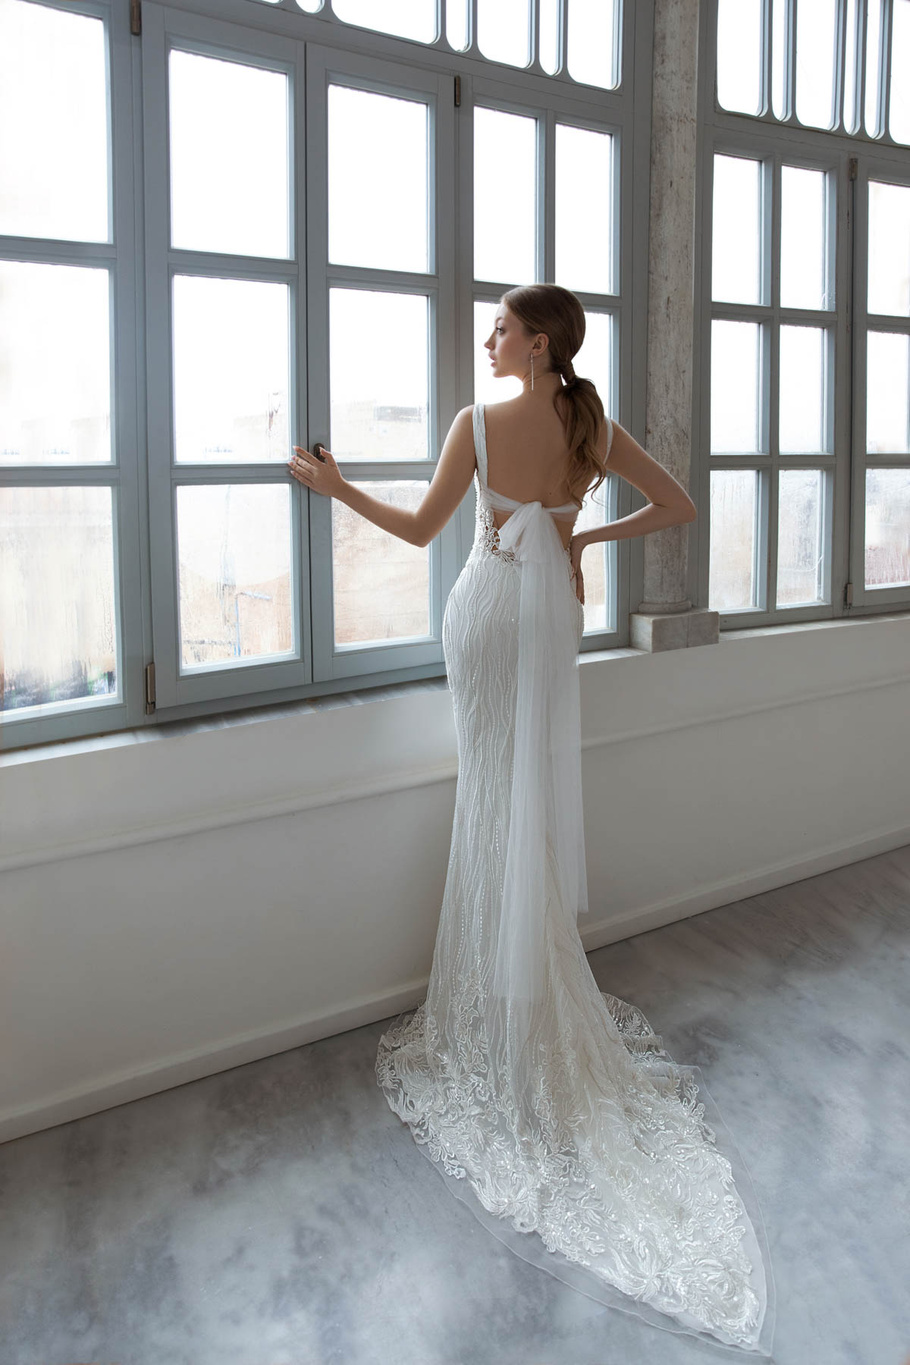 Купить свадебное платье «Мэйджест» Дарья Карлози из коллекции 2021 года в салоне «Мэри Трюфель»